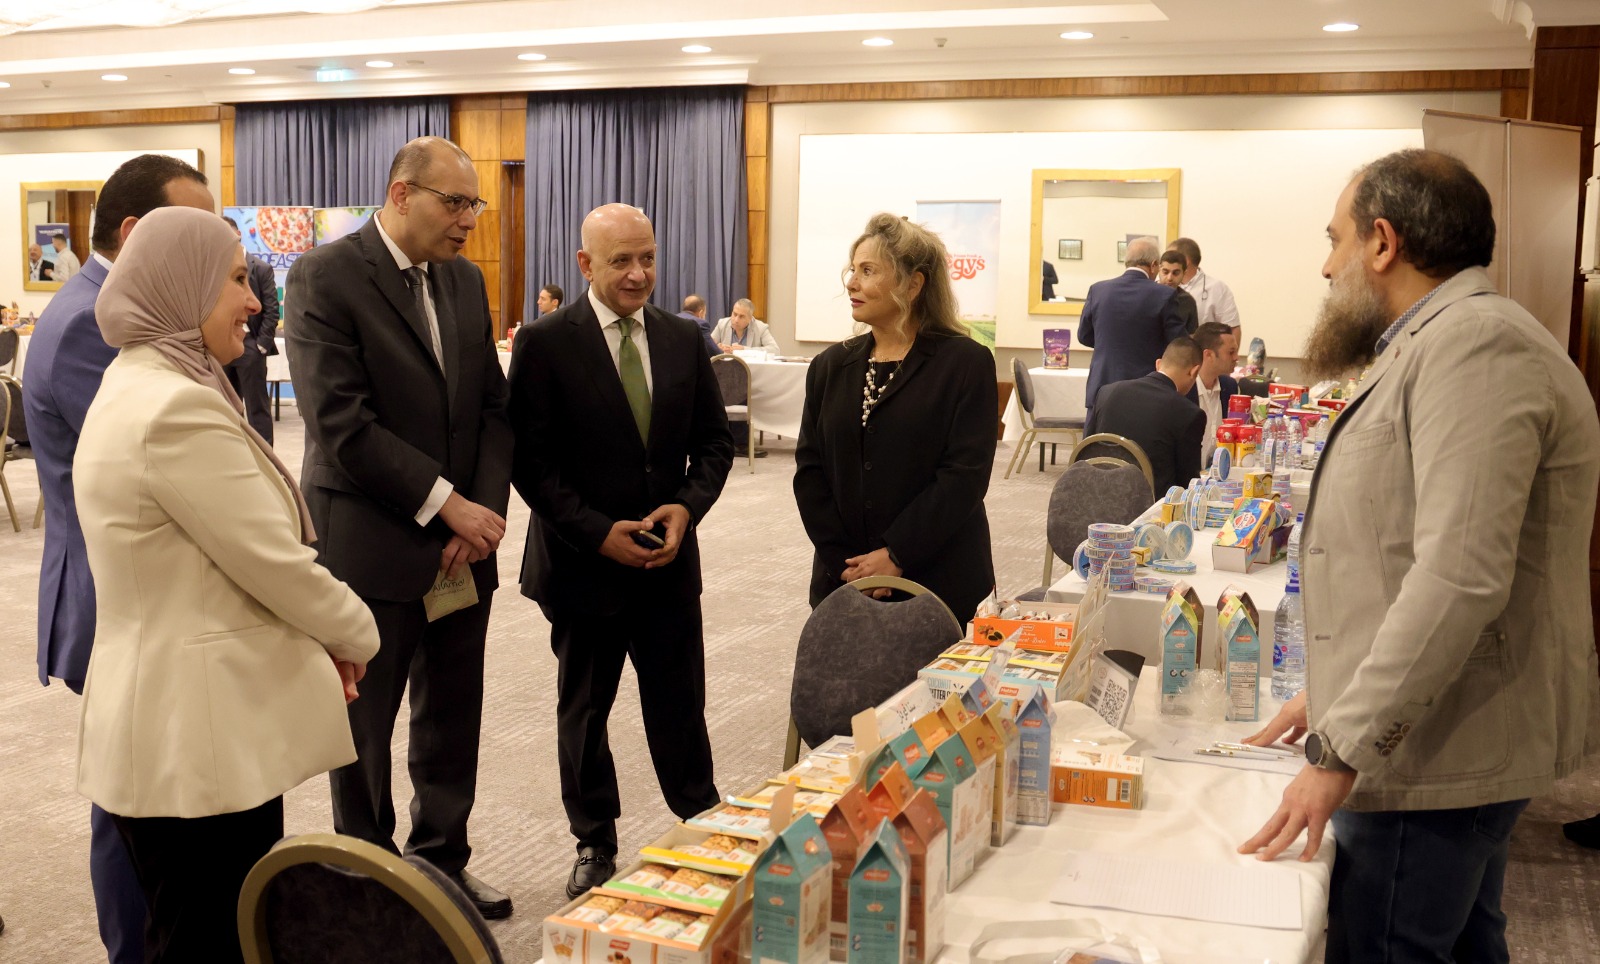 شركات مصرية: الأردن سوق واعدة ومنصة دخول عربية مهمة